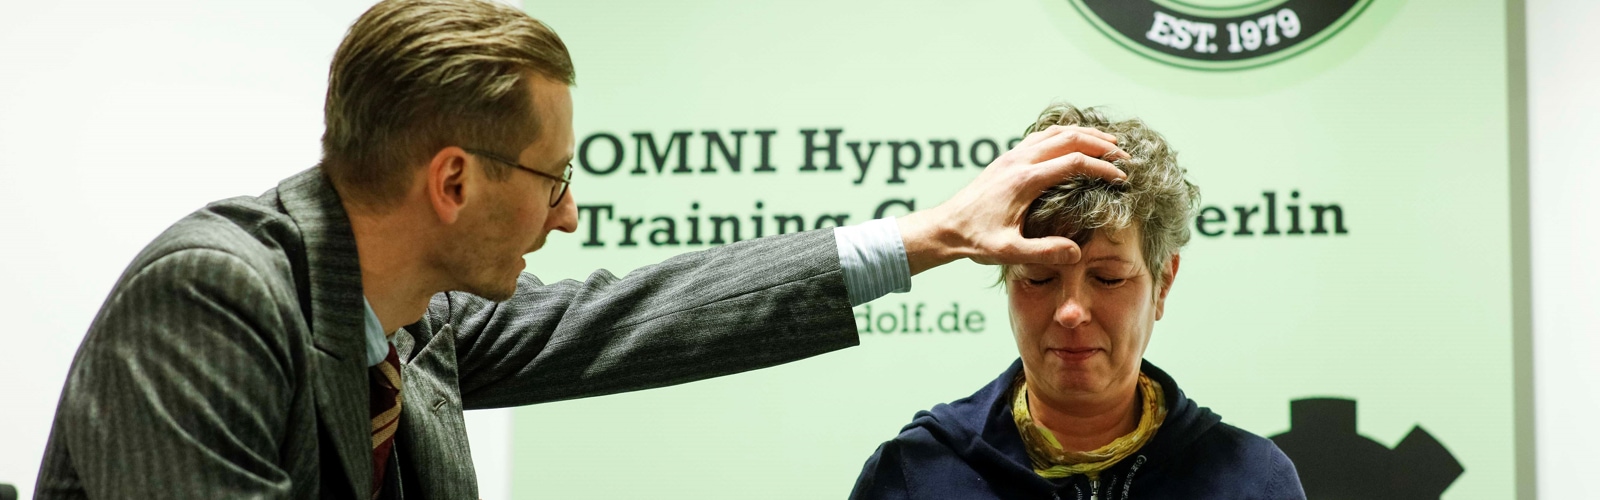 Hypnosetherapie Ausbildung, Hypnose lernen, Hypnose Ausbildung